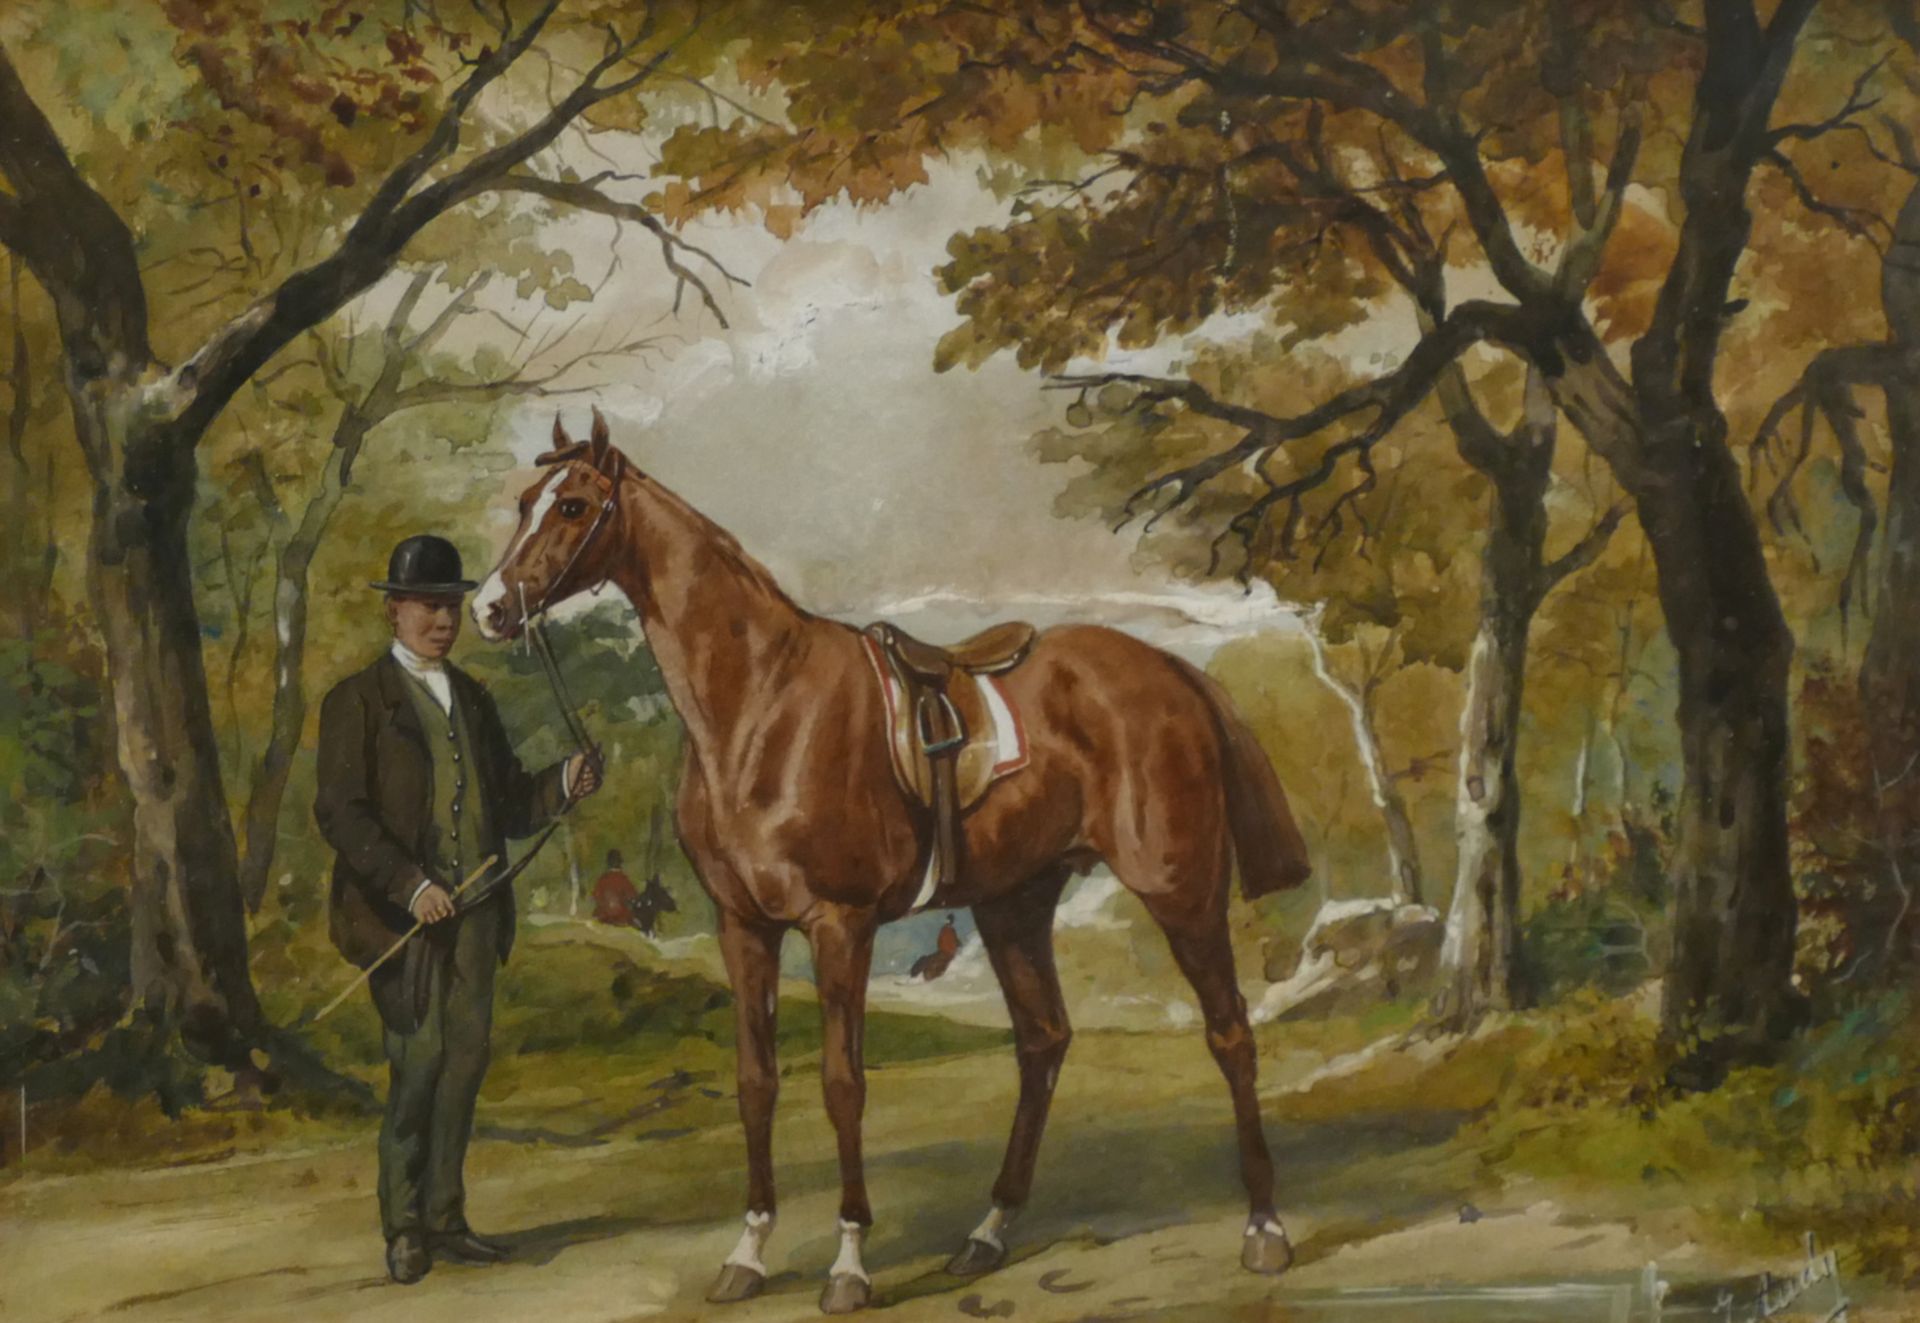 1 Aquarell J. AUDY (wohl Johnny A. activ 1850-1880) "Englischer Gentleman und sein Pferd"